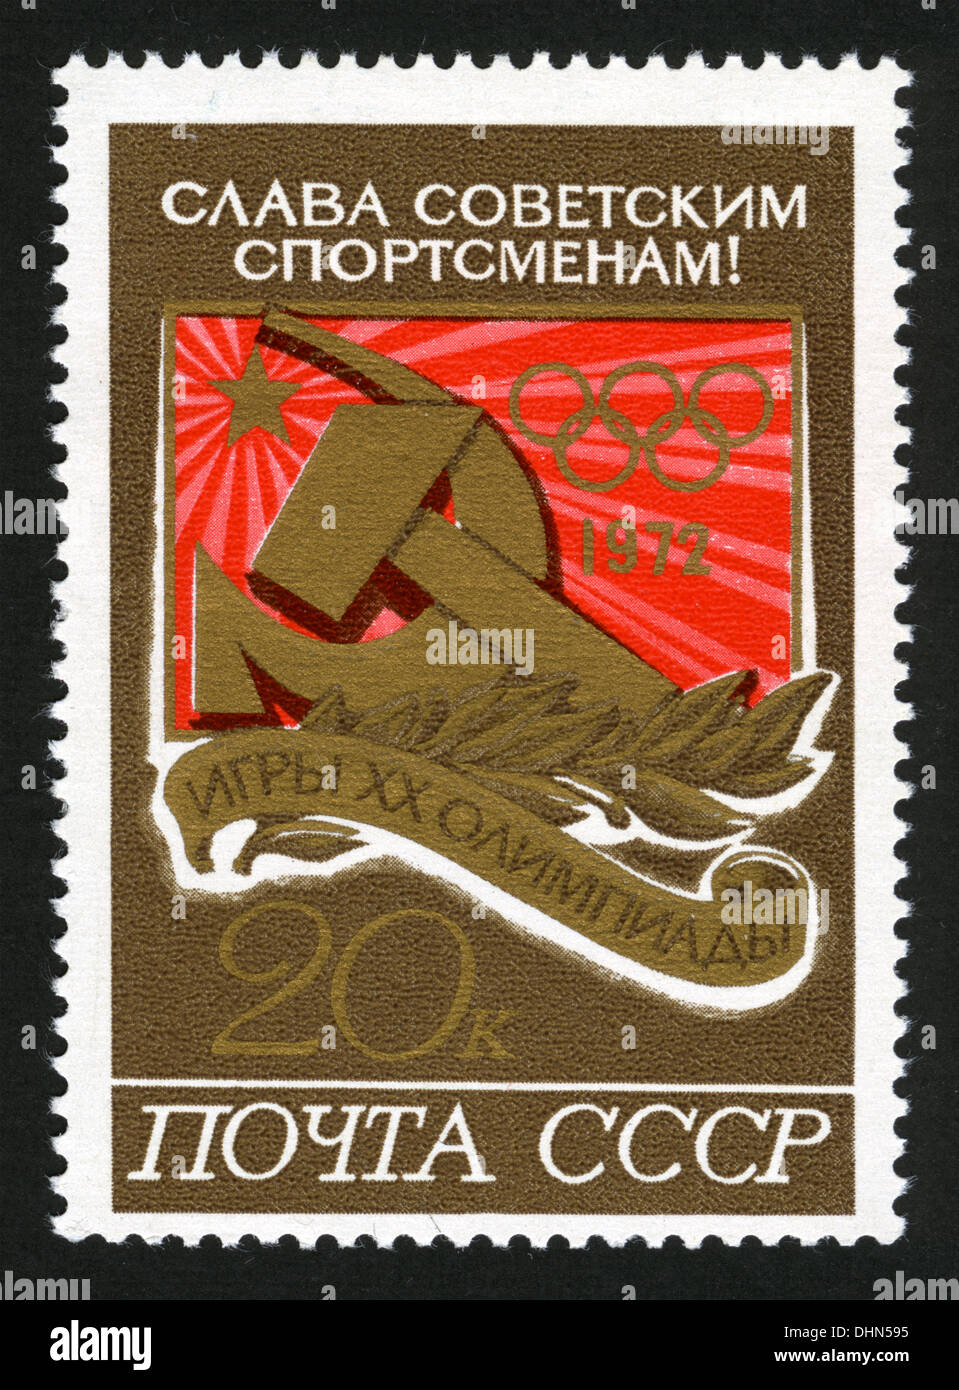 Urss, Mail URSS,1972,année,mark post stamp, Jeux Olympiques Jeux Olympiques sport,jeux,de la 20e Olympiade, gloire à l'athlètes soviétiques Banque D'Images